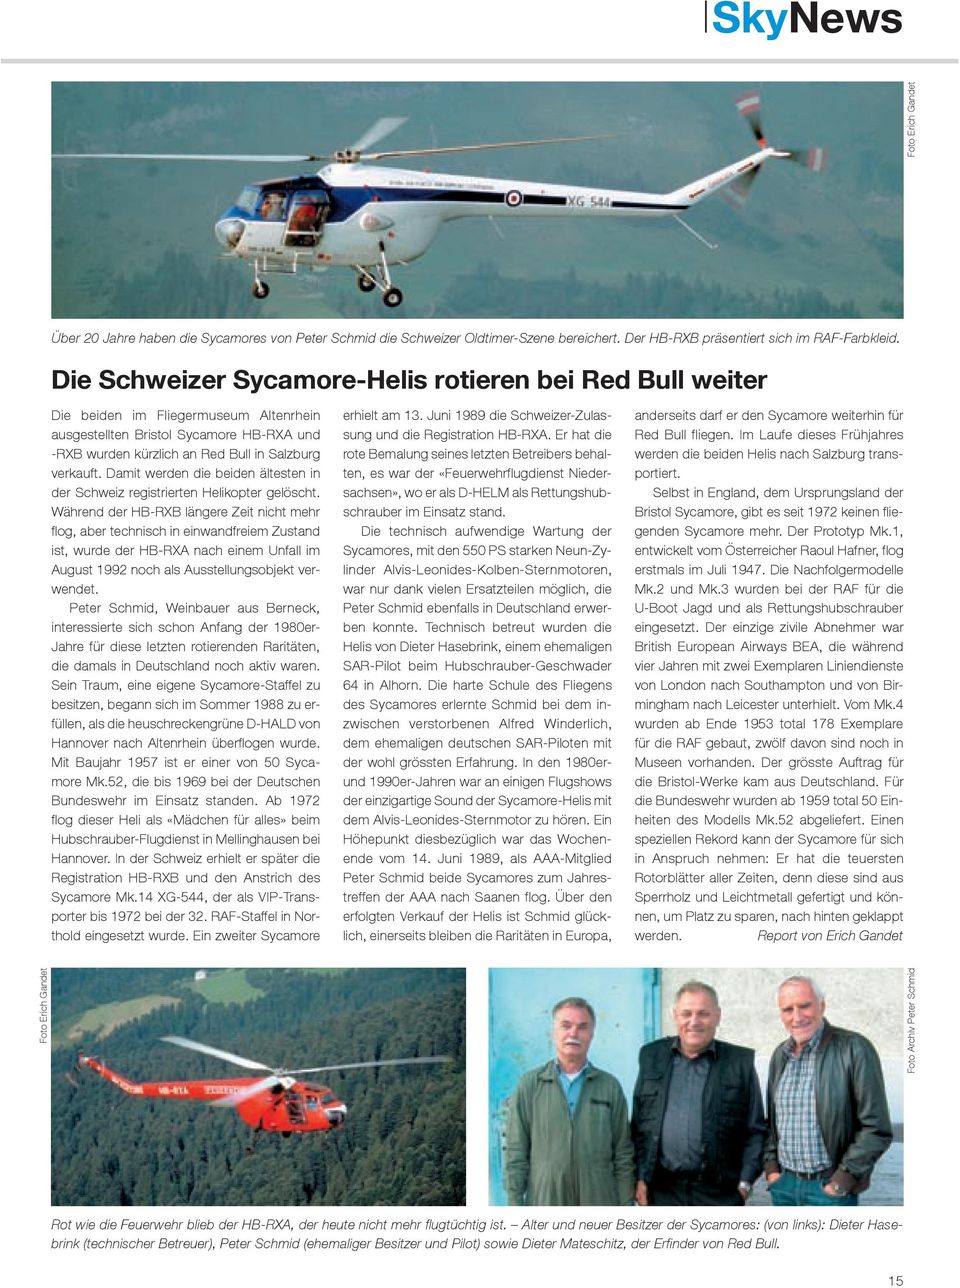 Damit werden die beiden ältesten in der Schweiz registrierten Helikopter gelöscht.